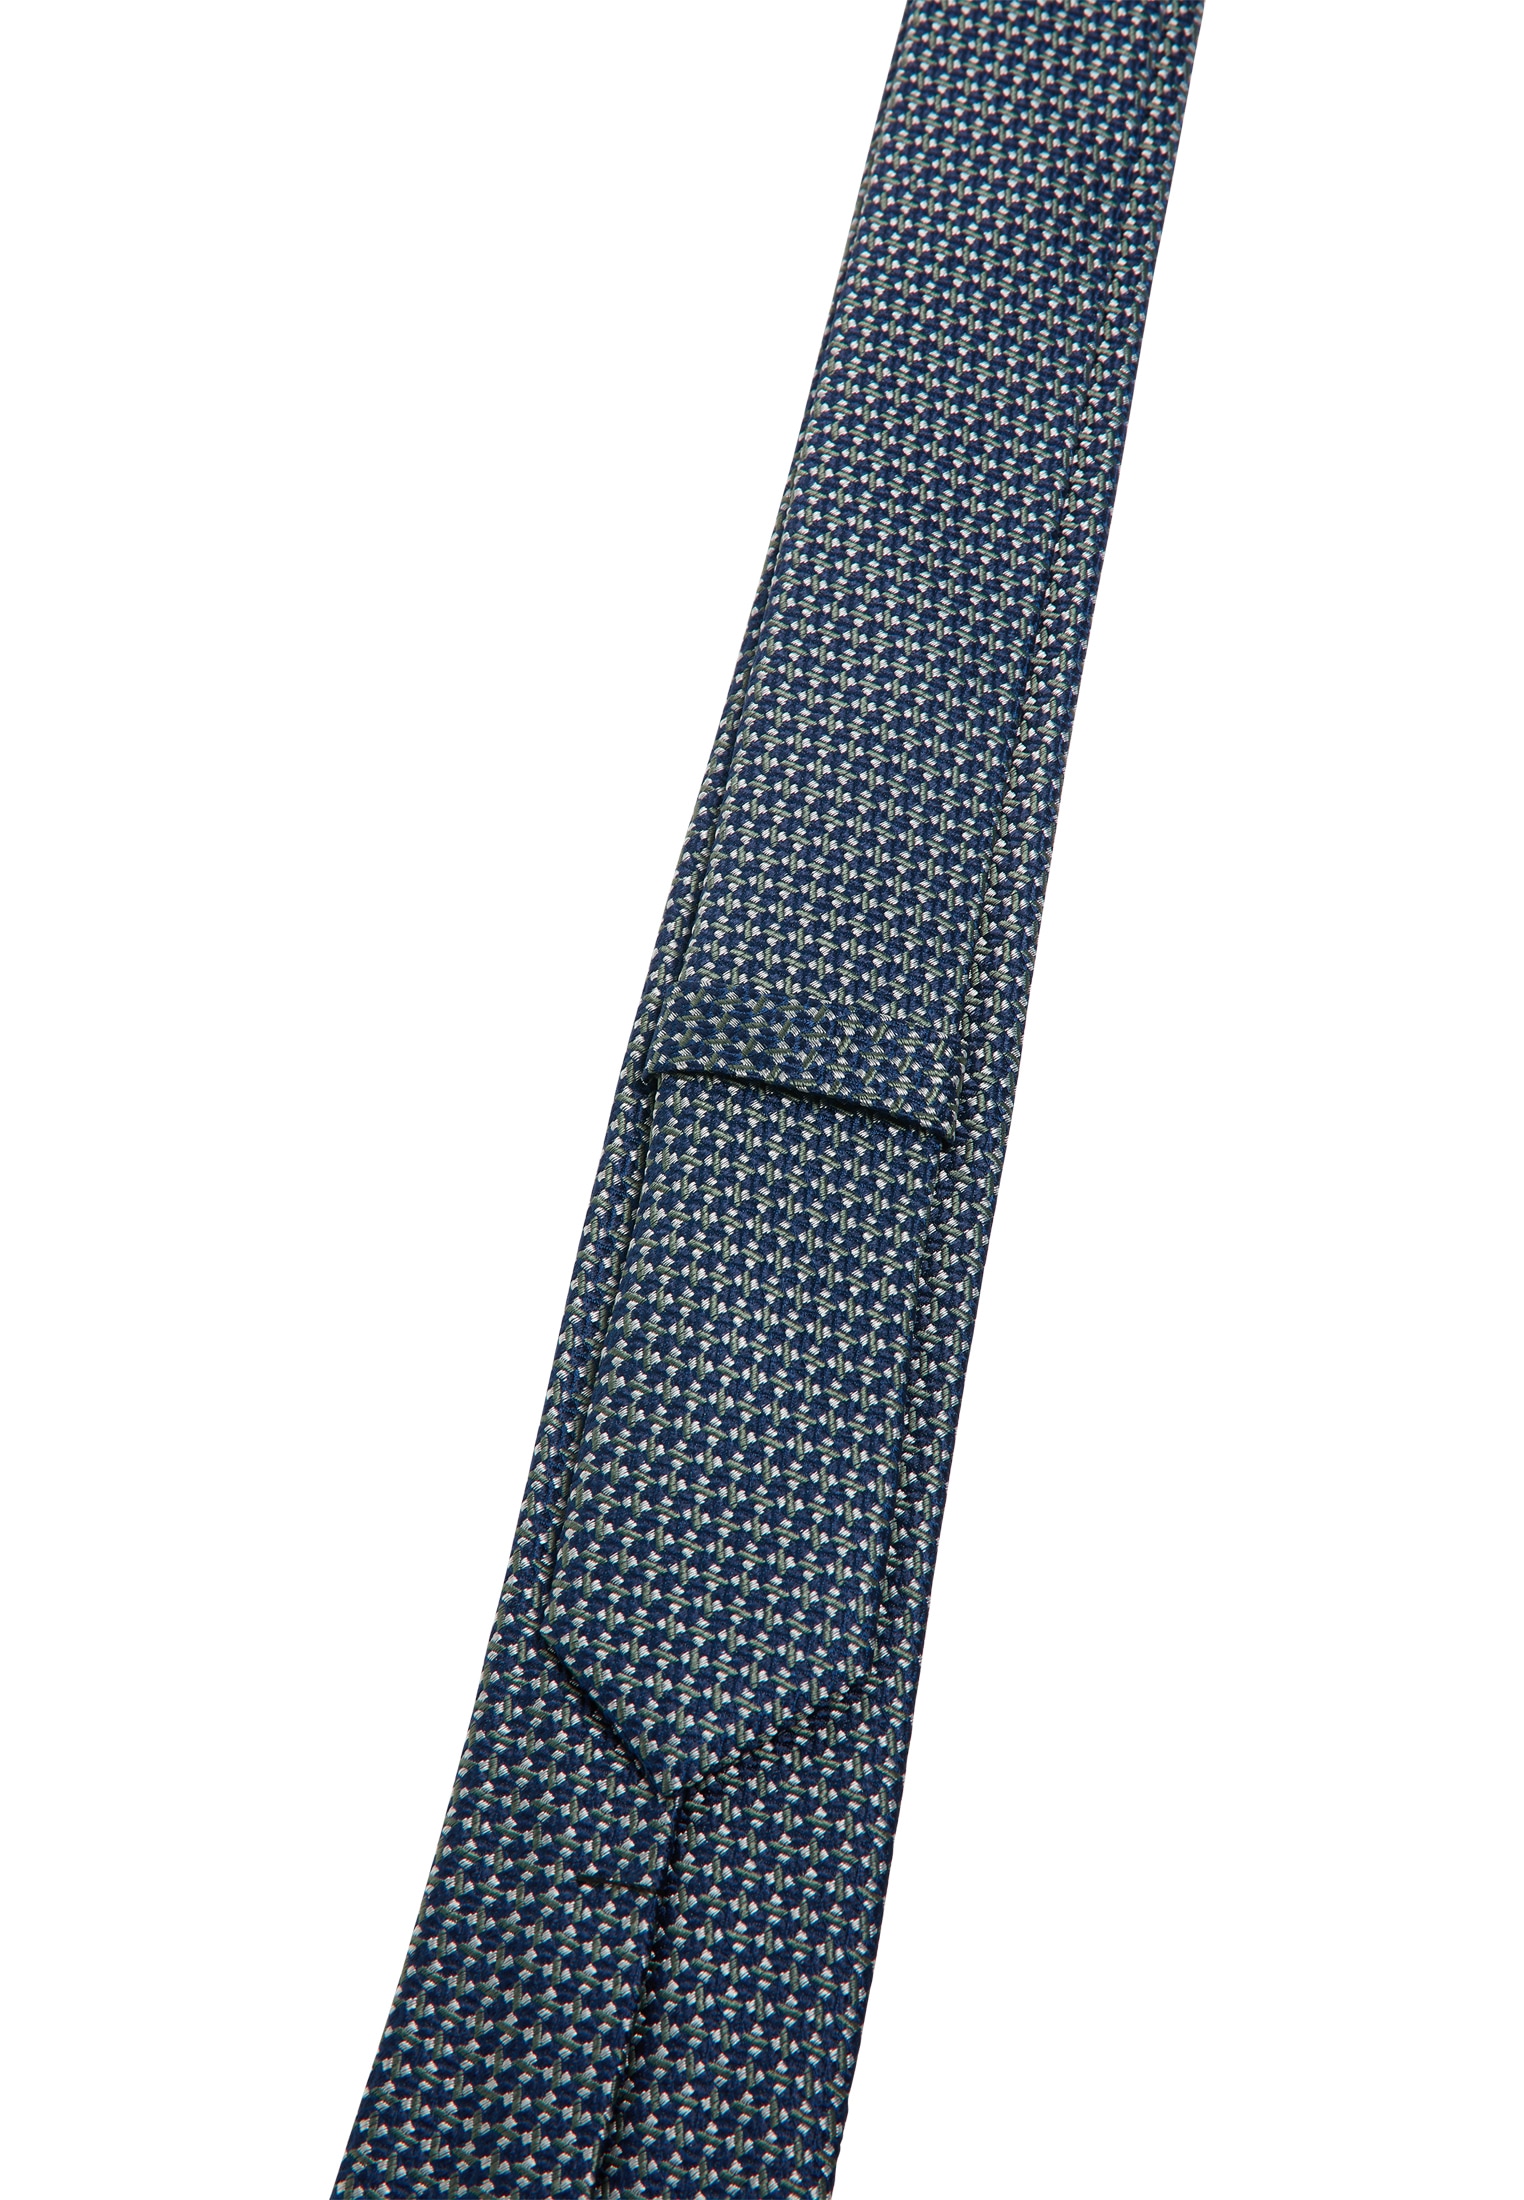 Eterna Krawatte kaufen bei OTTO